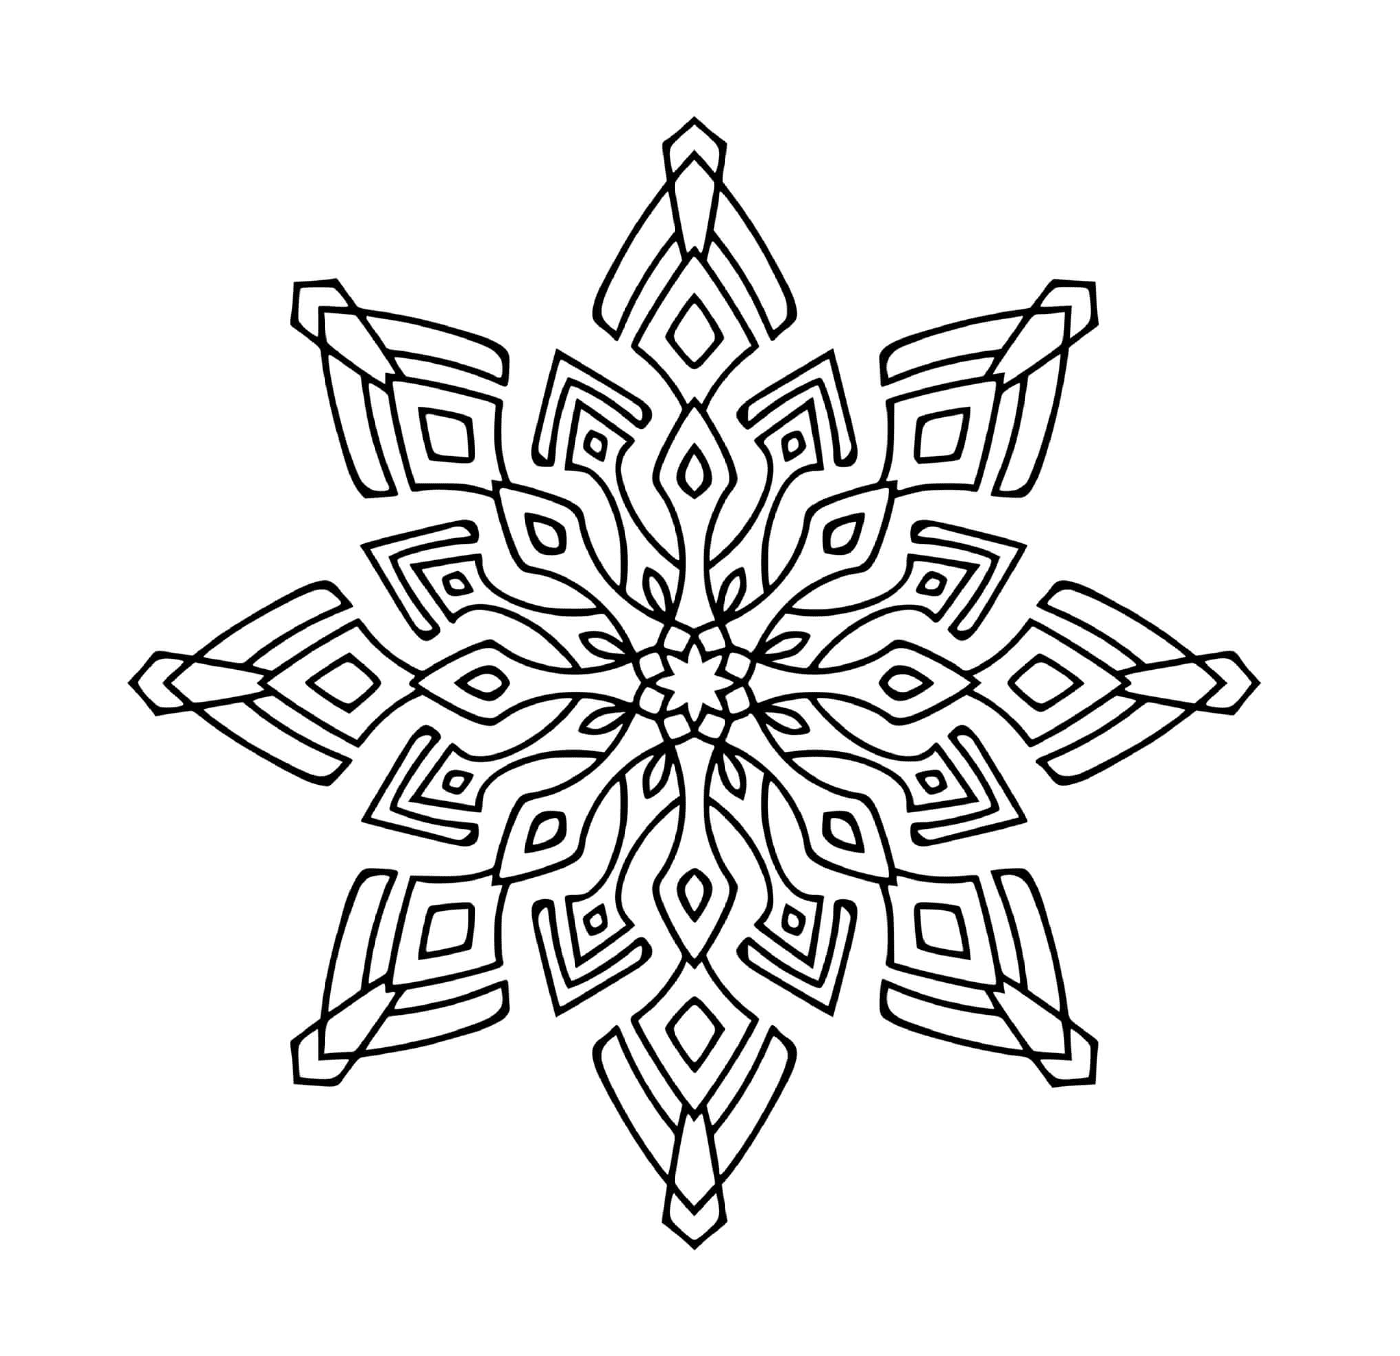  Um moderno design de floco de neve em mandala 